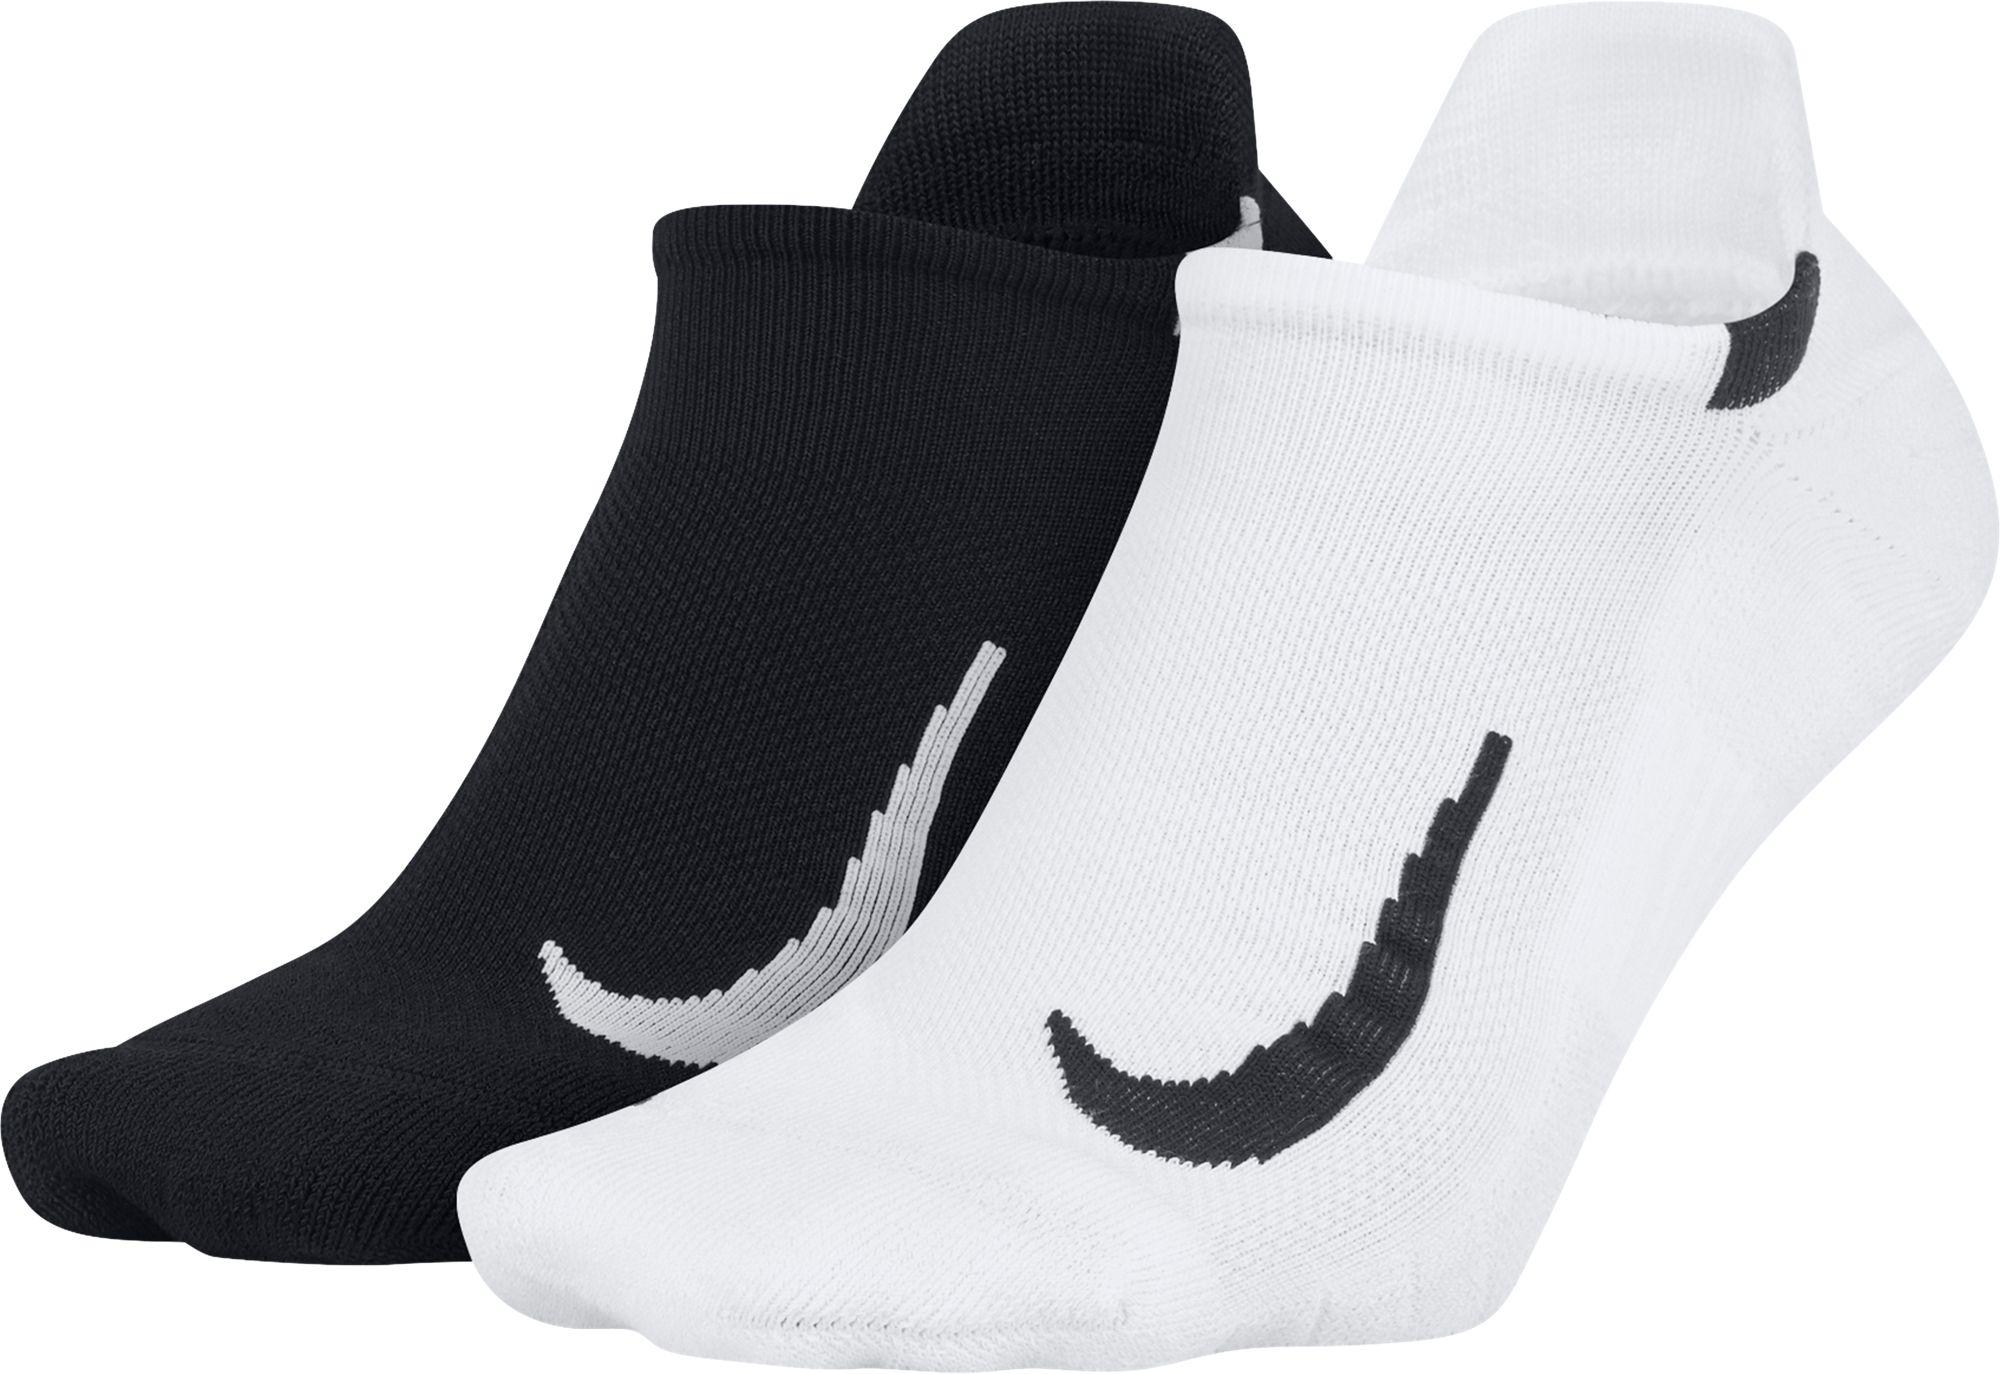 Lyst - Nike Running No-show Socks 2-pack in White for Men